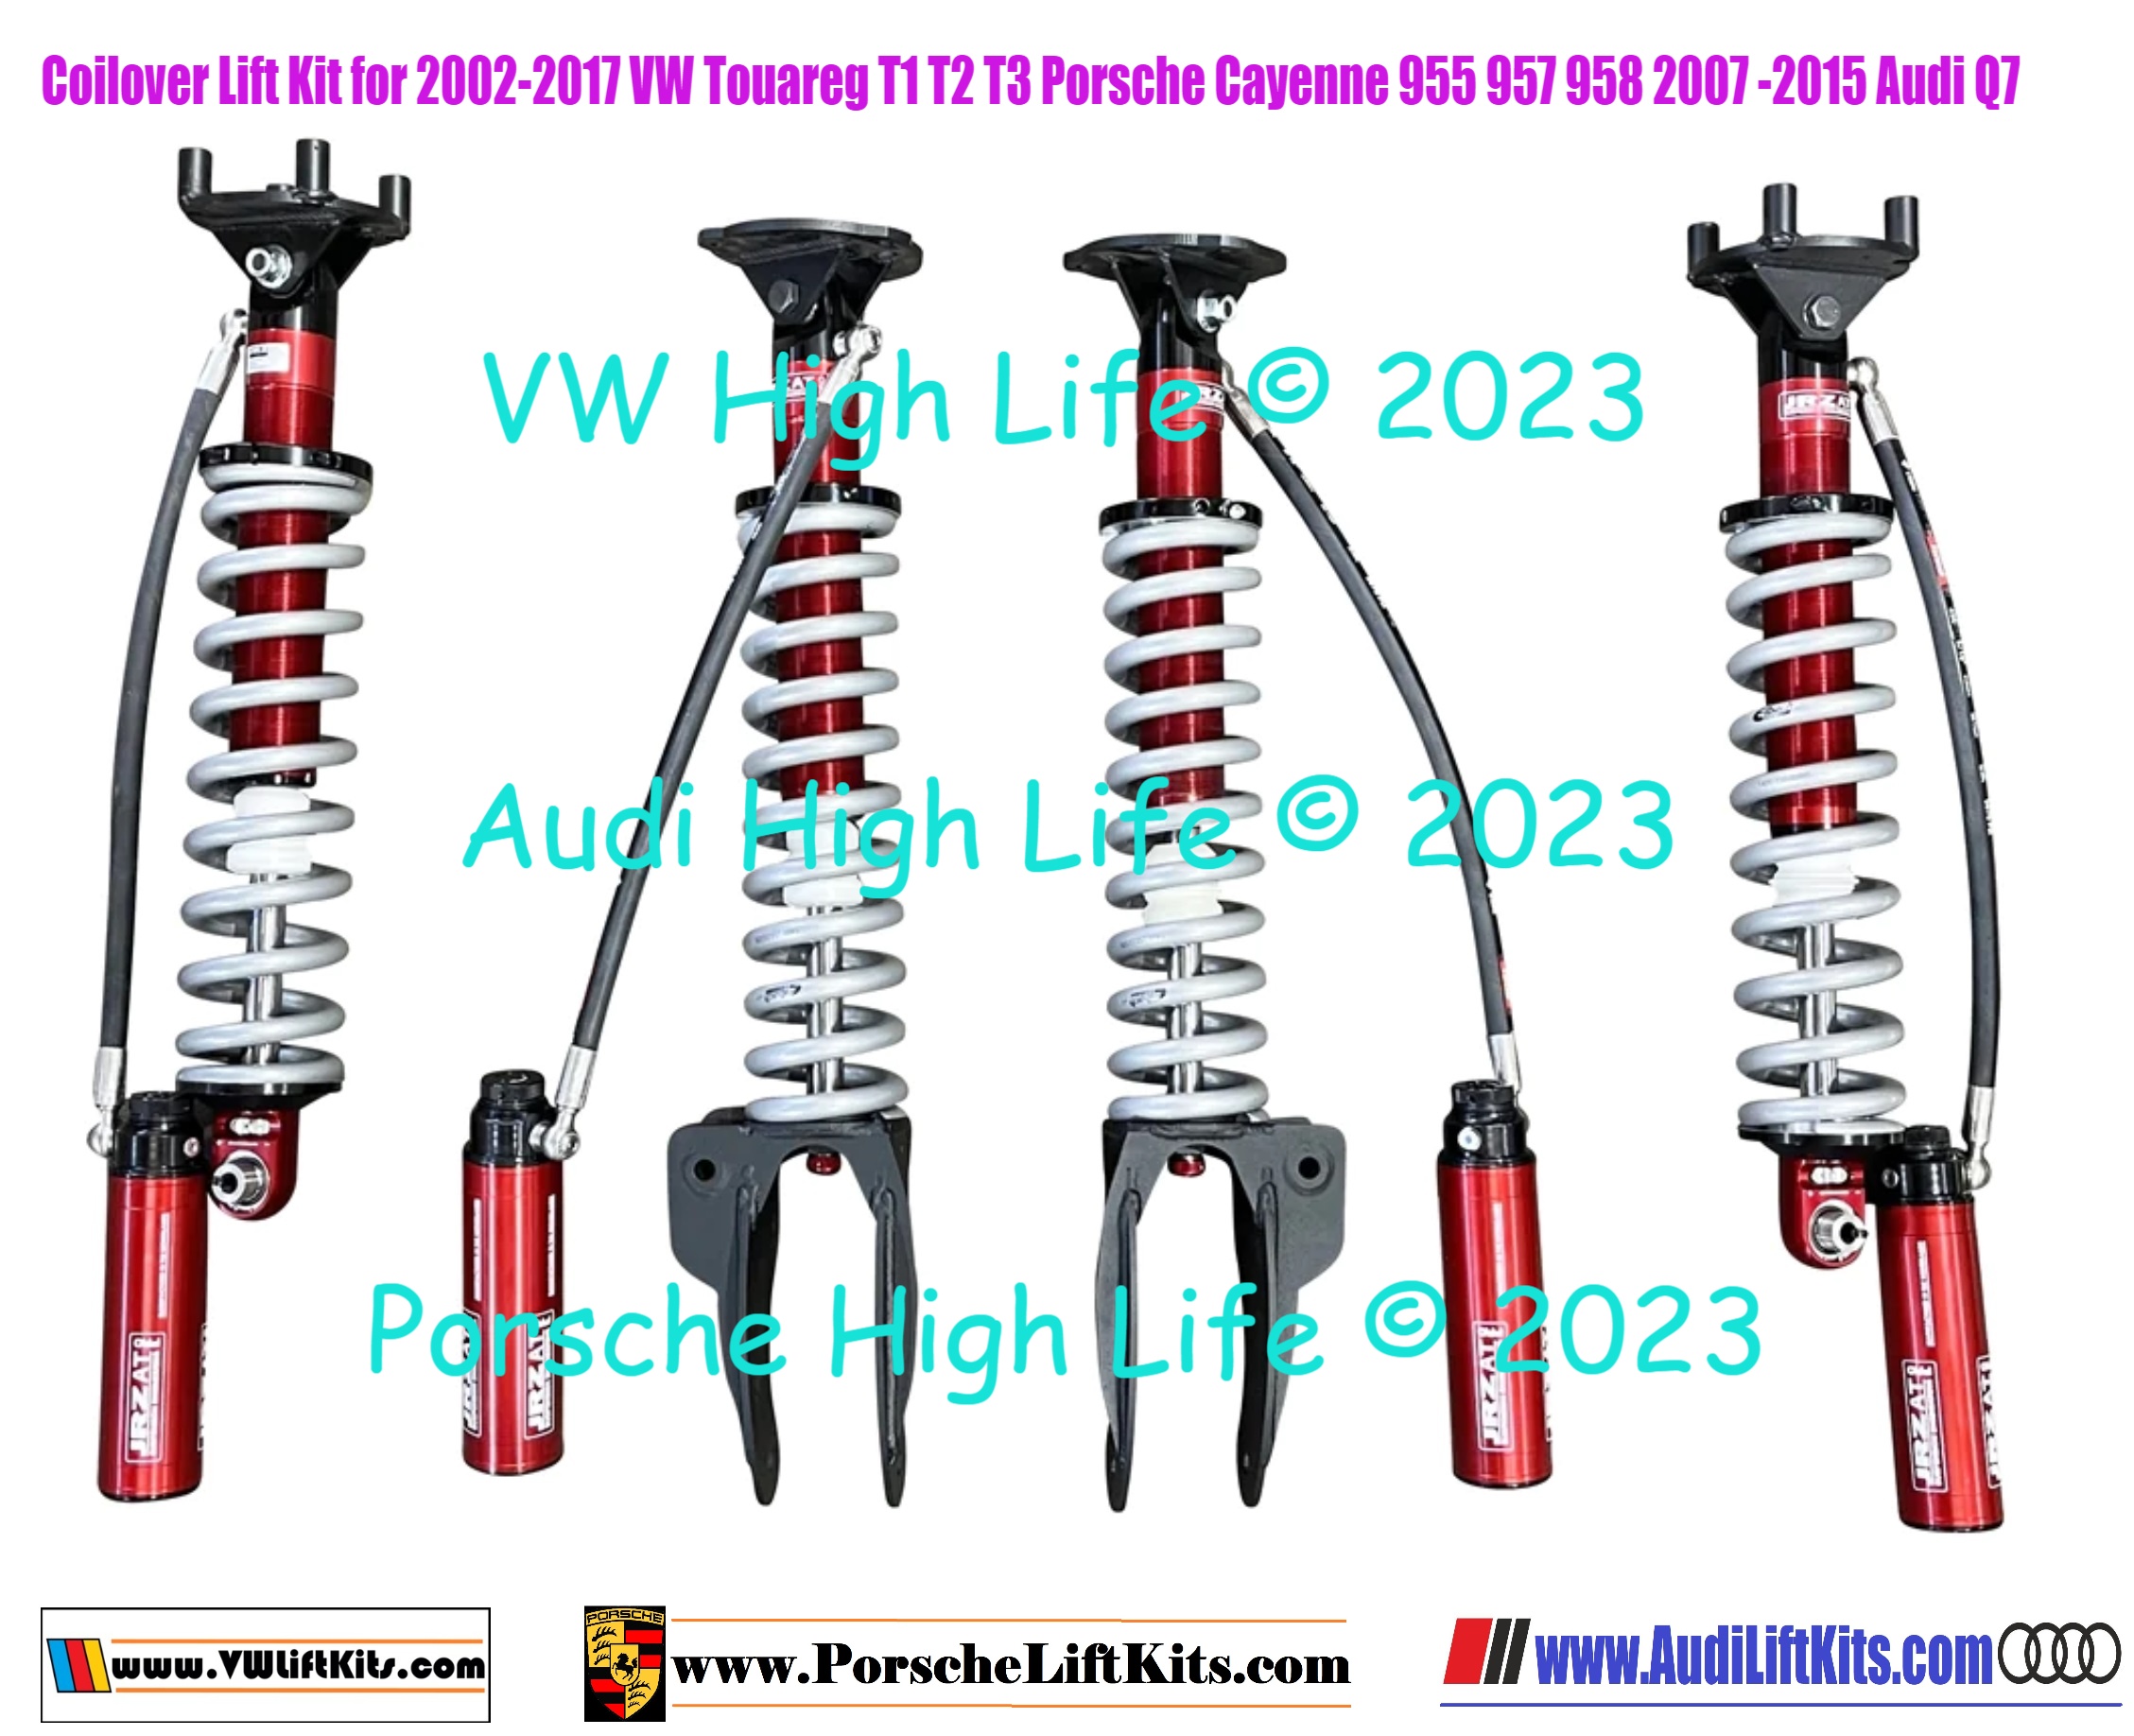 Coilover Kit for 2002-2017 VW Touareg T1 T2 T3 Porsche Cayenne 955 957 958 Audi Q7 $4600 USD